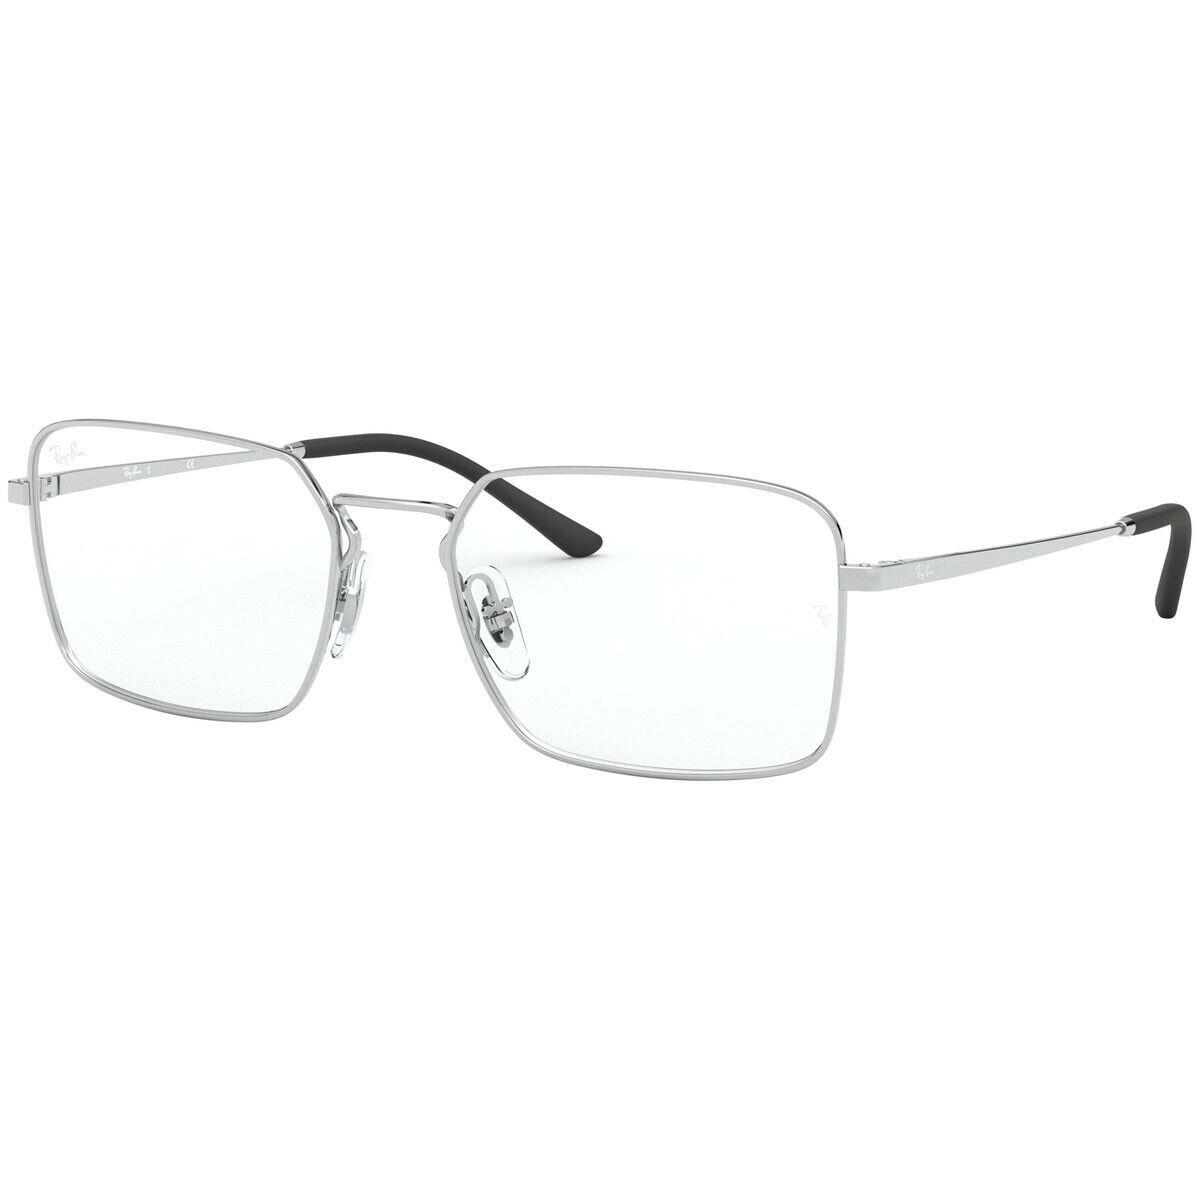 Ray Ban Eyeglasses RX RB 6440 2501 53-18 Silver Metal Square